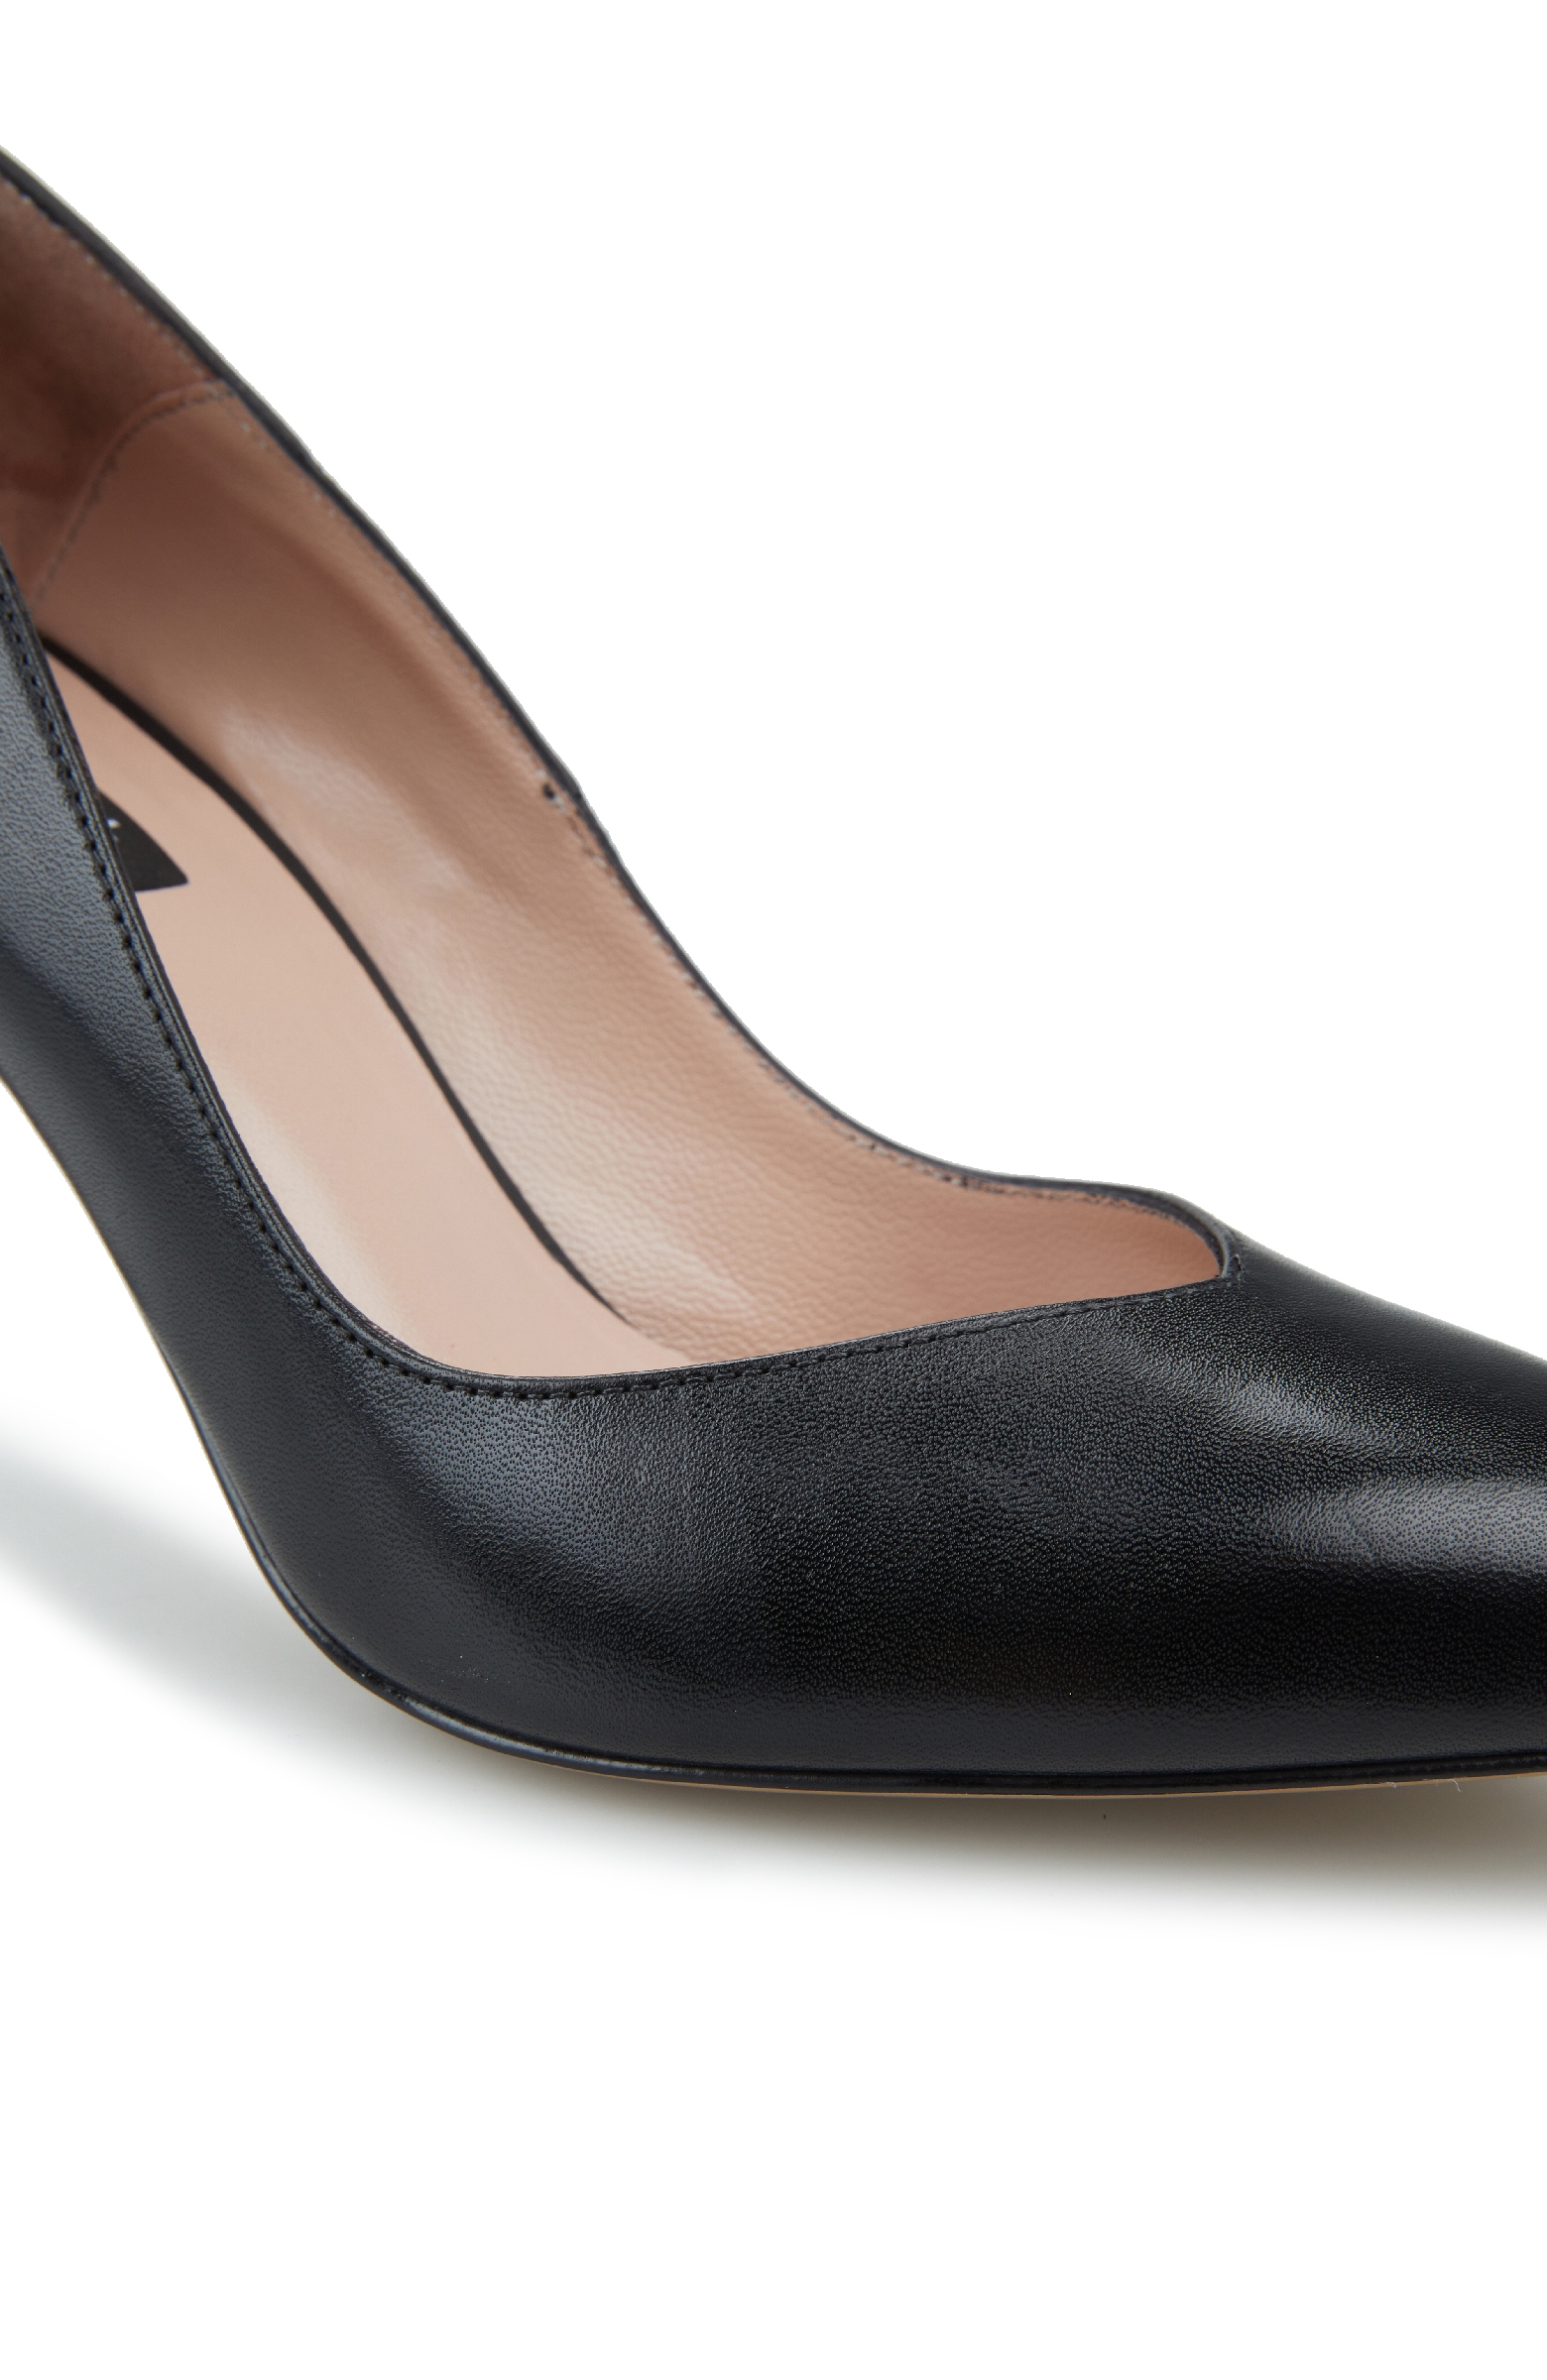 Kadın Deri Siyah Topuklu Ayakkabı